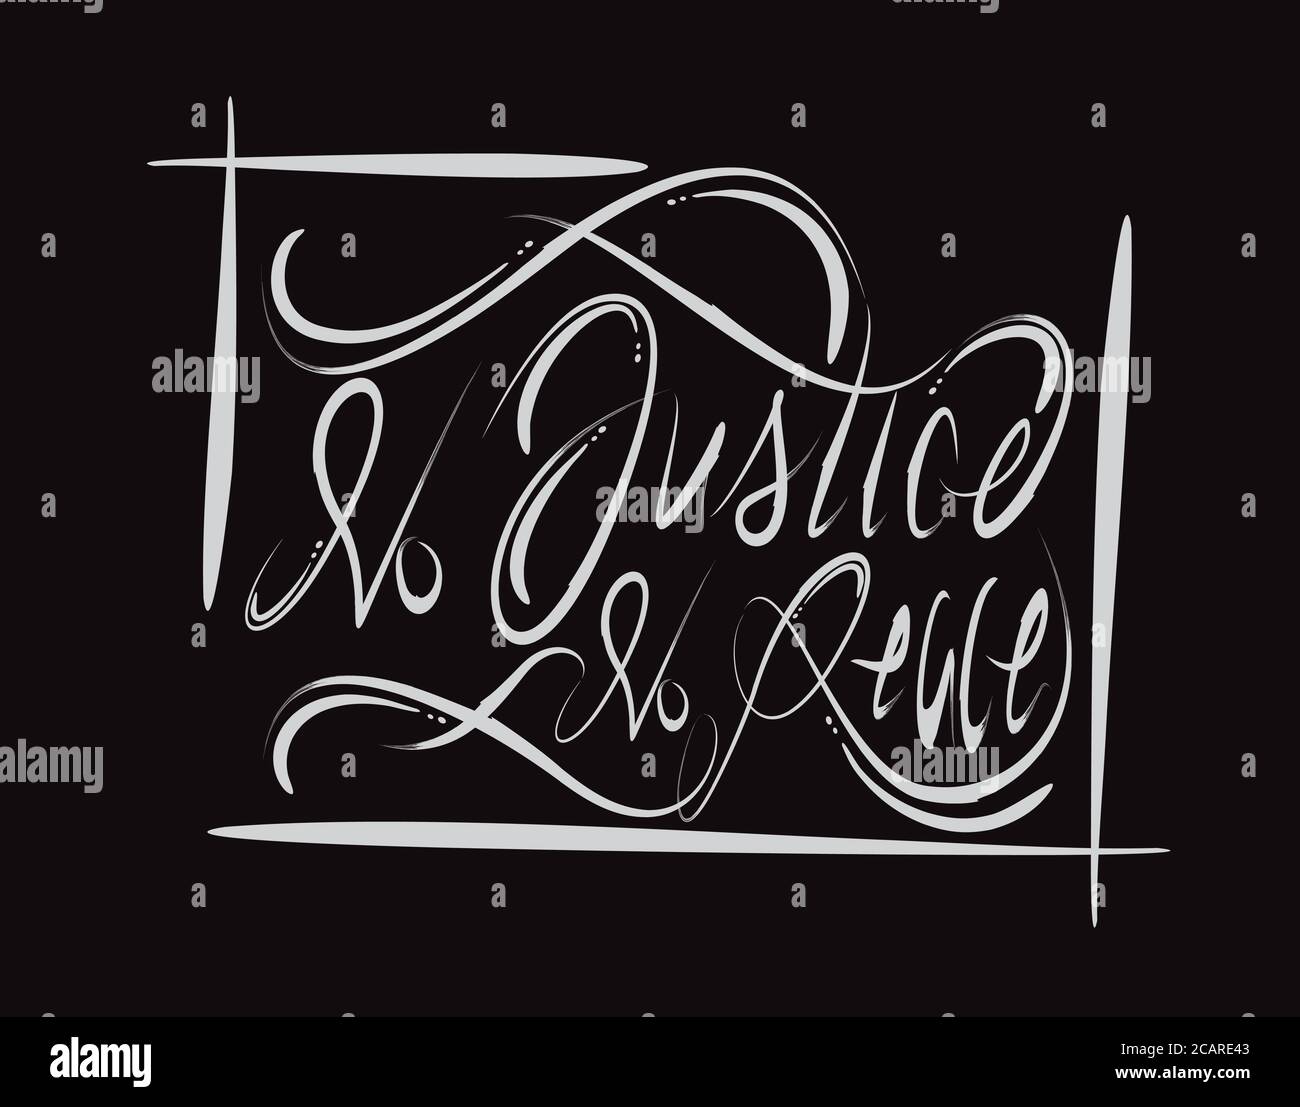 No Justice No Peace Lettering text on Black background in illustrazione vettoriale Illustrazione Vettoriale